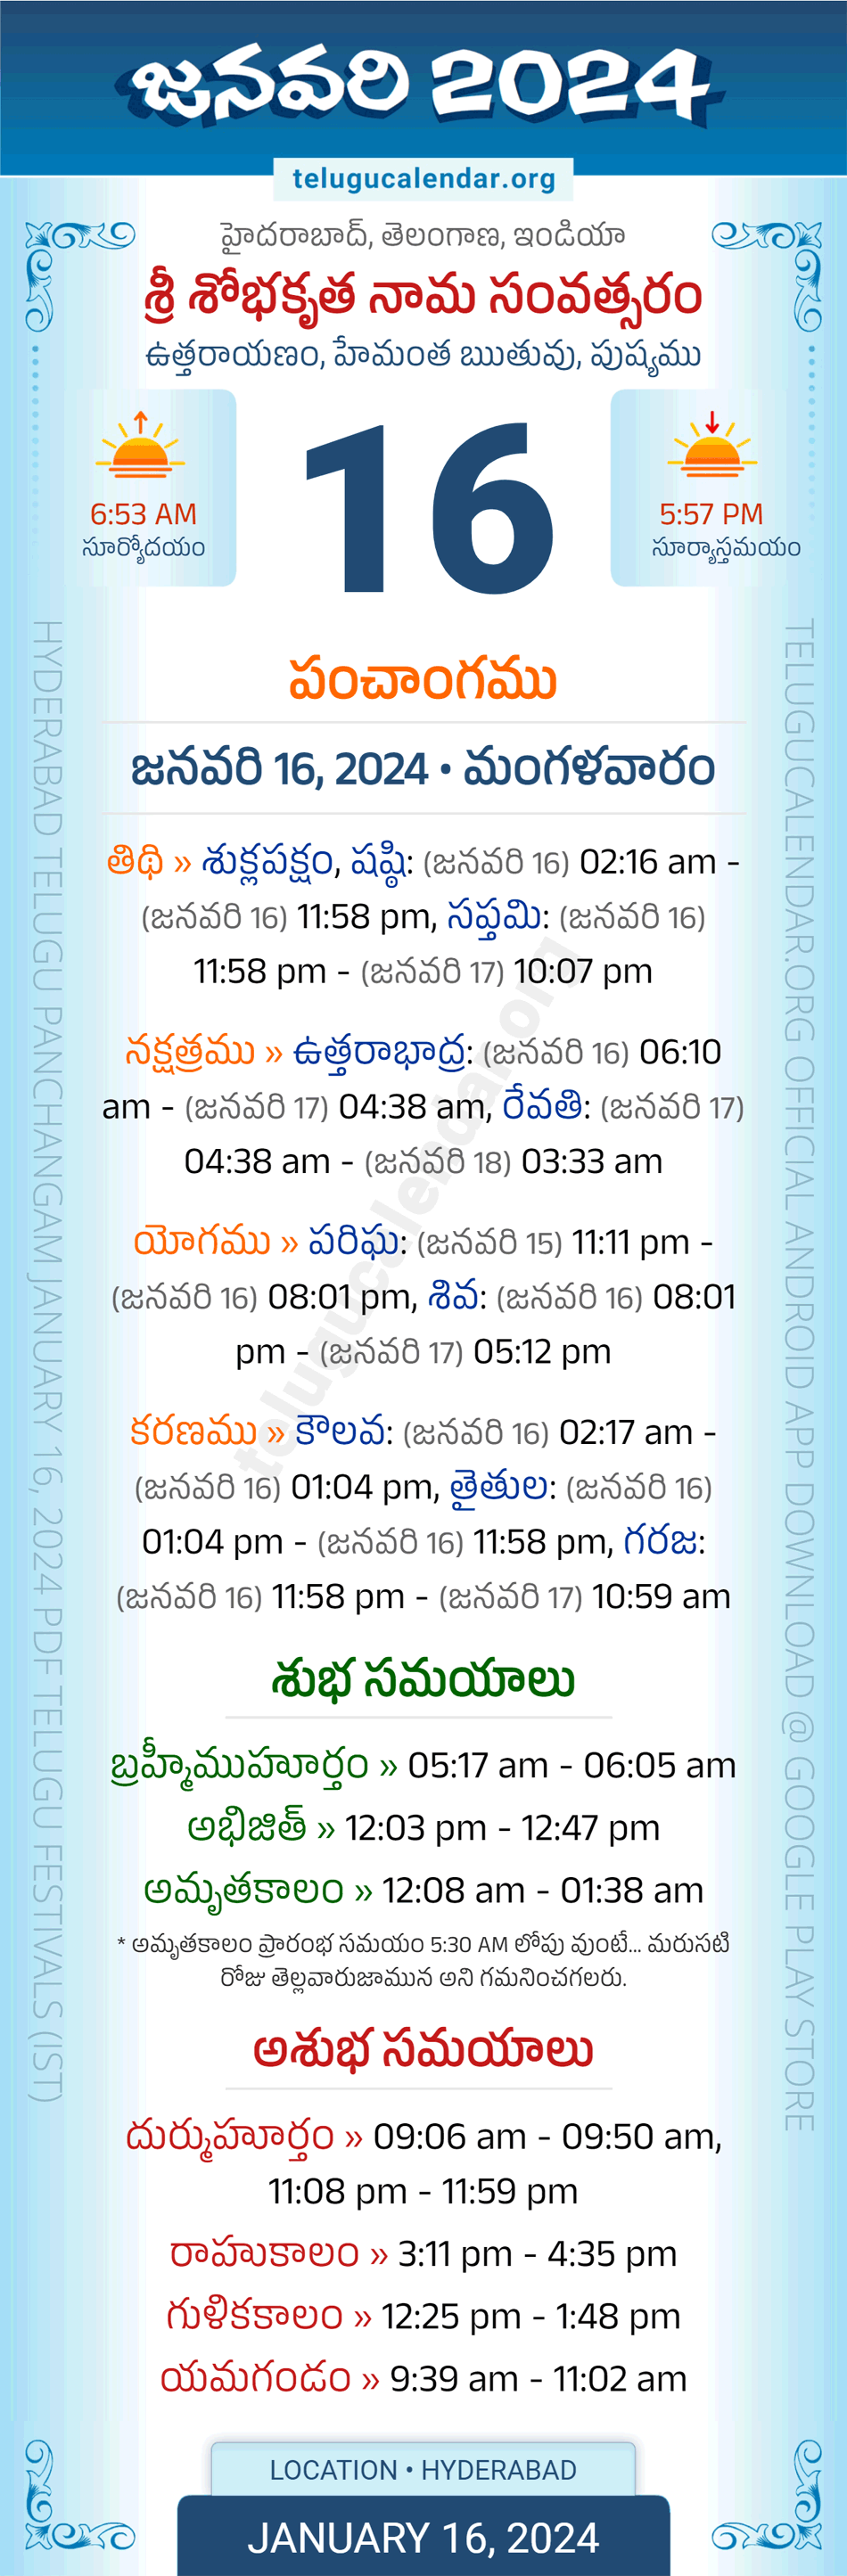 January 16, 2024 Telugu Calendar Panchangam Telangana